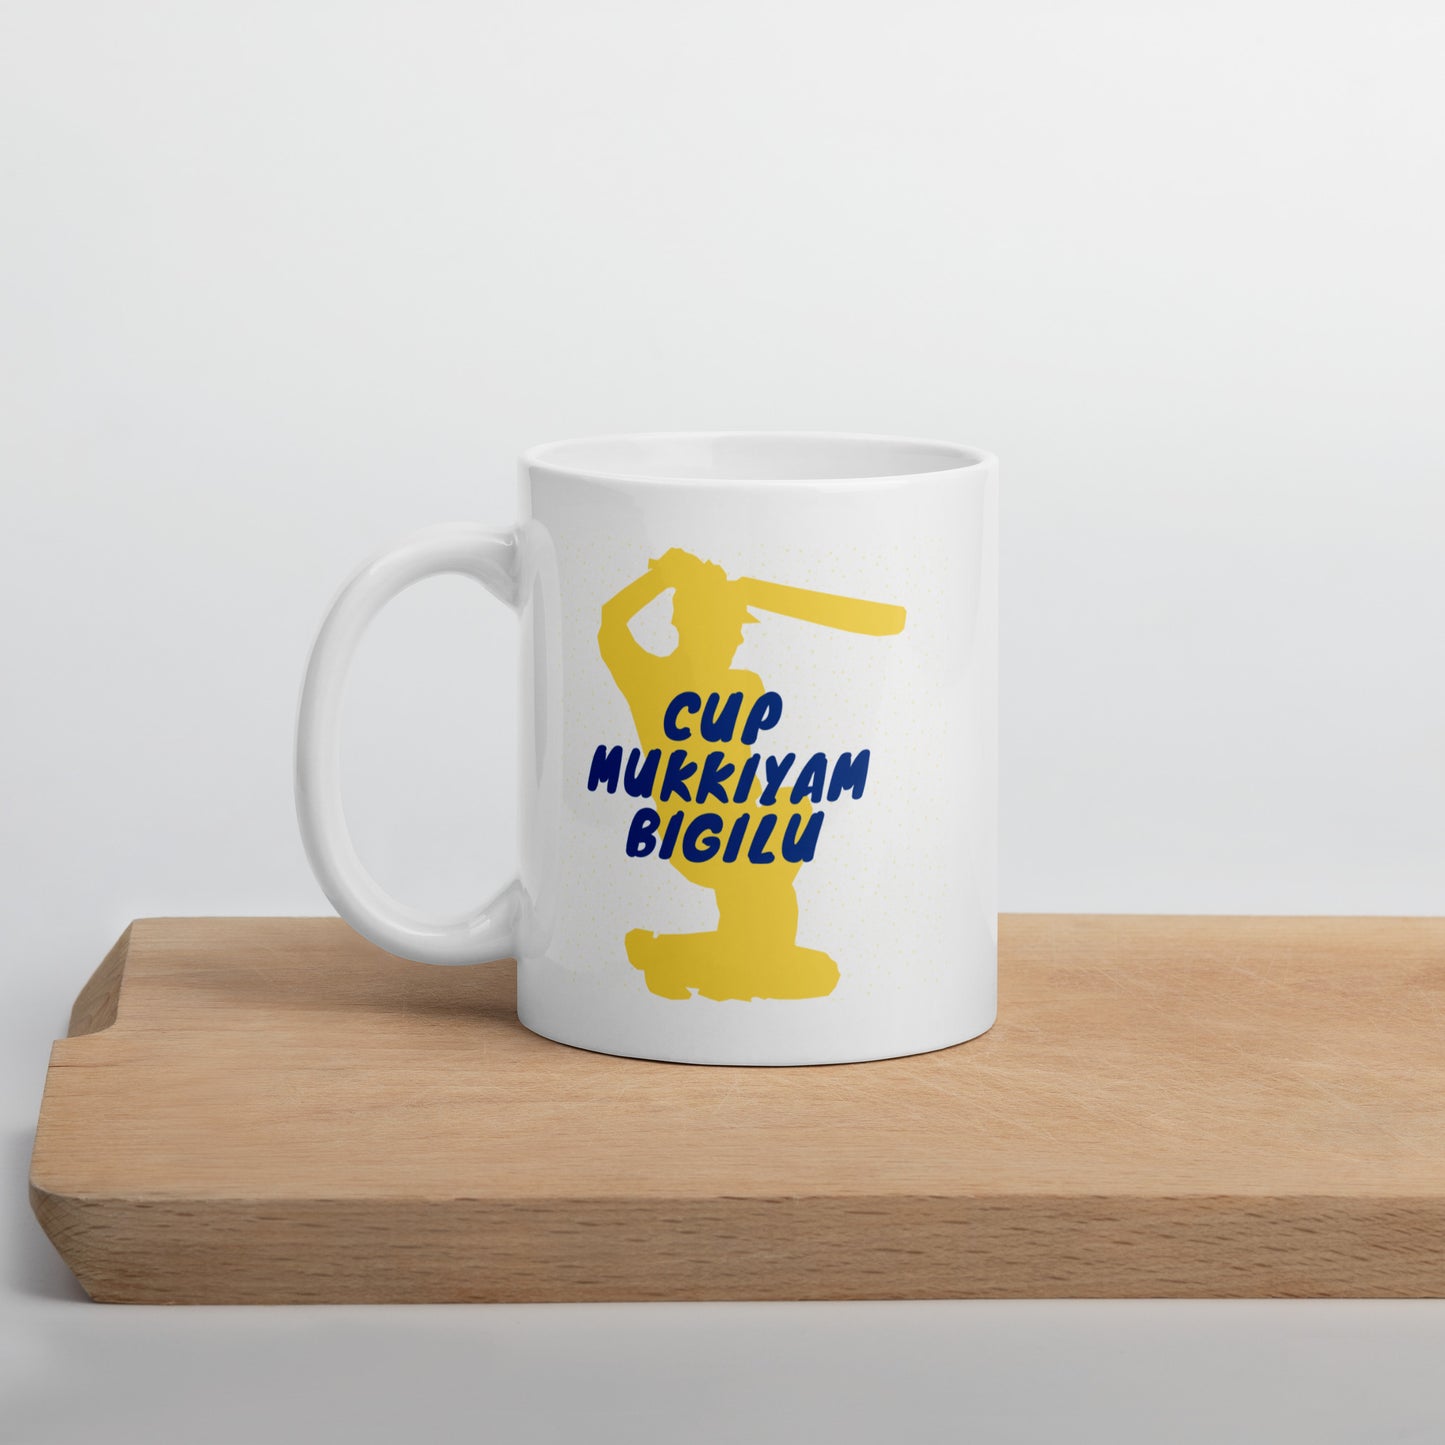 CSK IPL White glossy mug